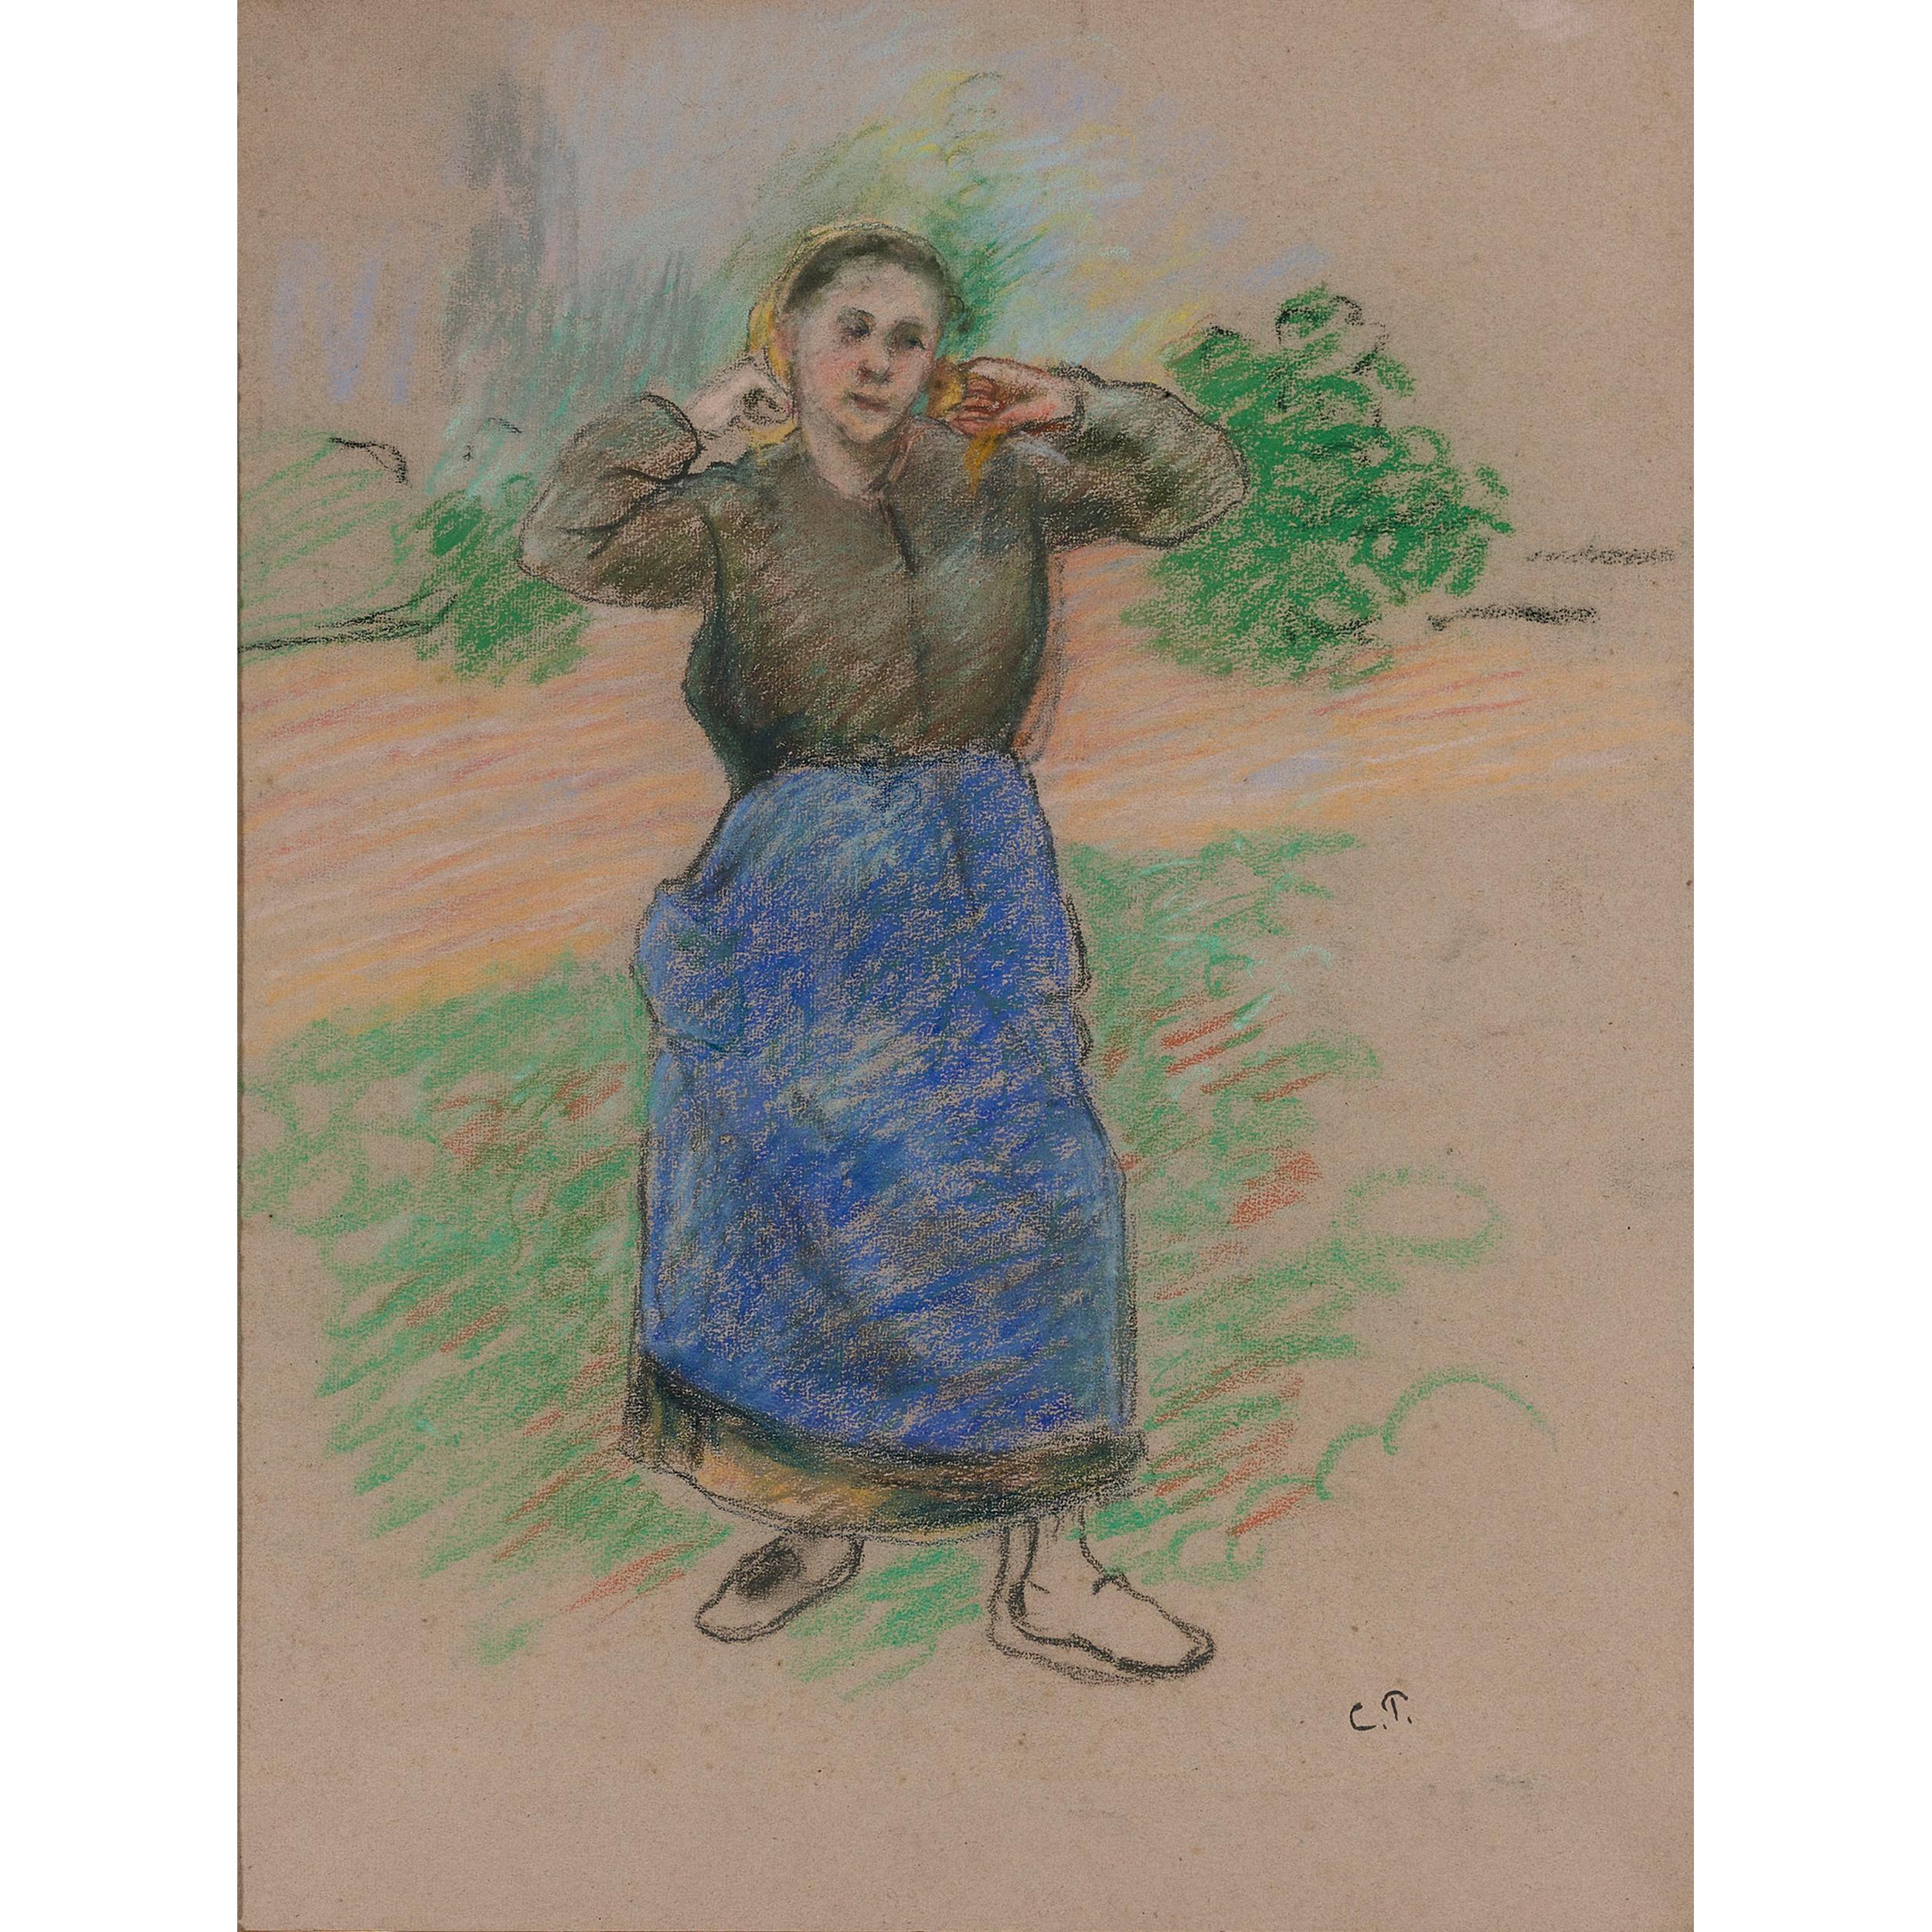 Camille Pissarro Portrait - Paysanne Nouant son Foulard (Peasant Arranging her Scarf)